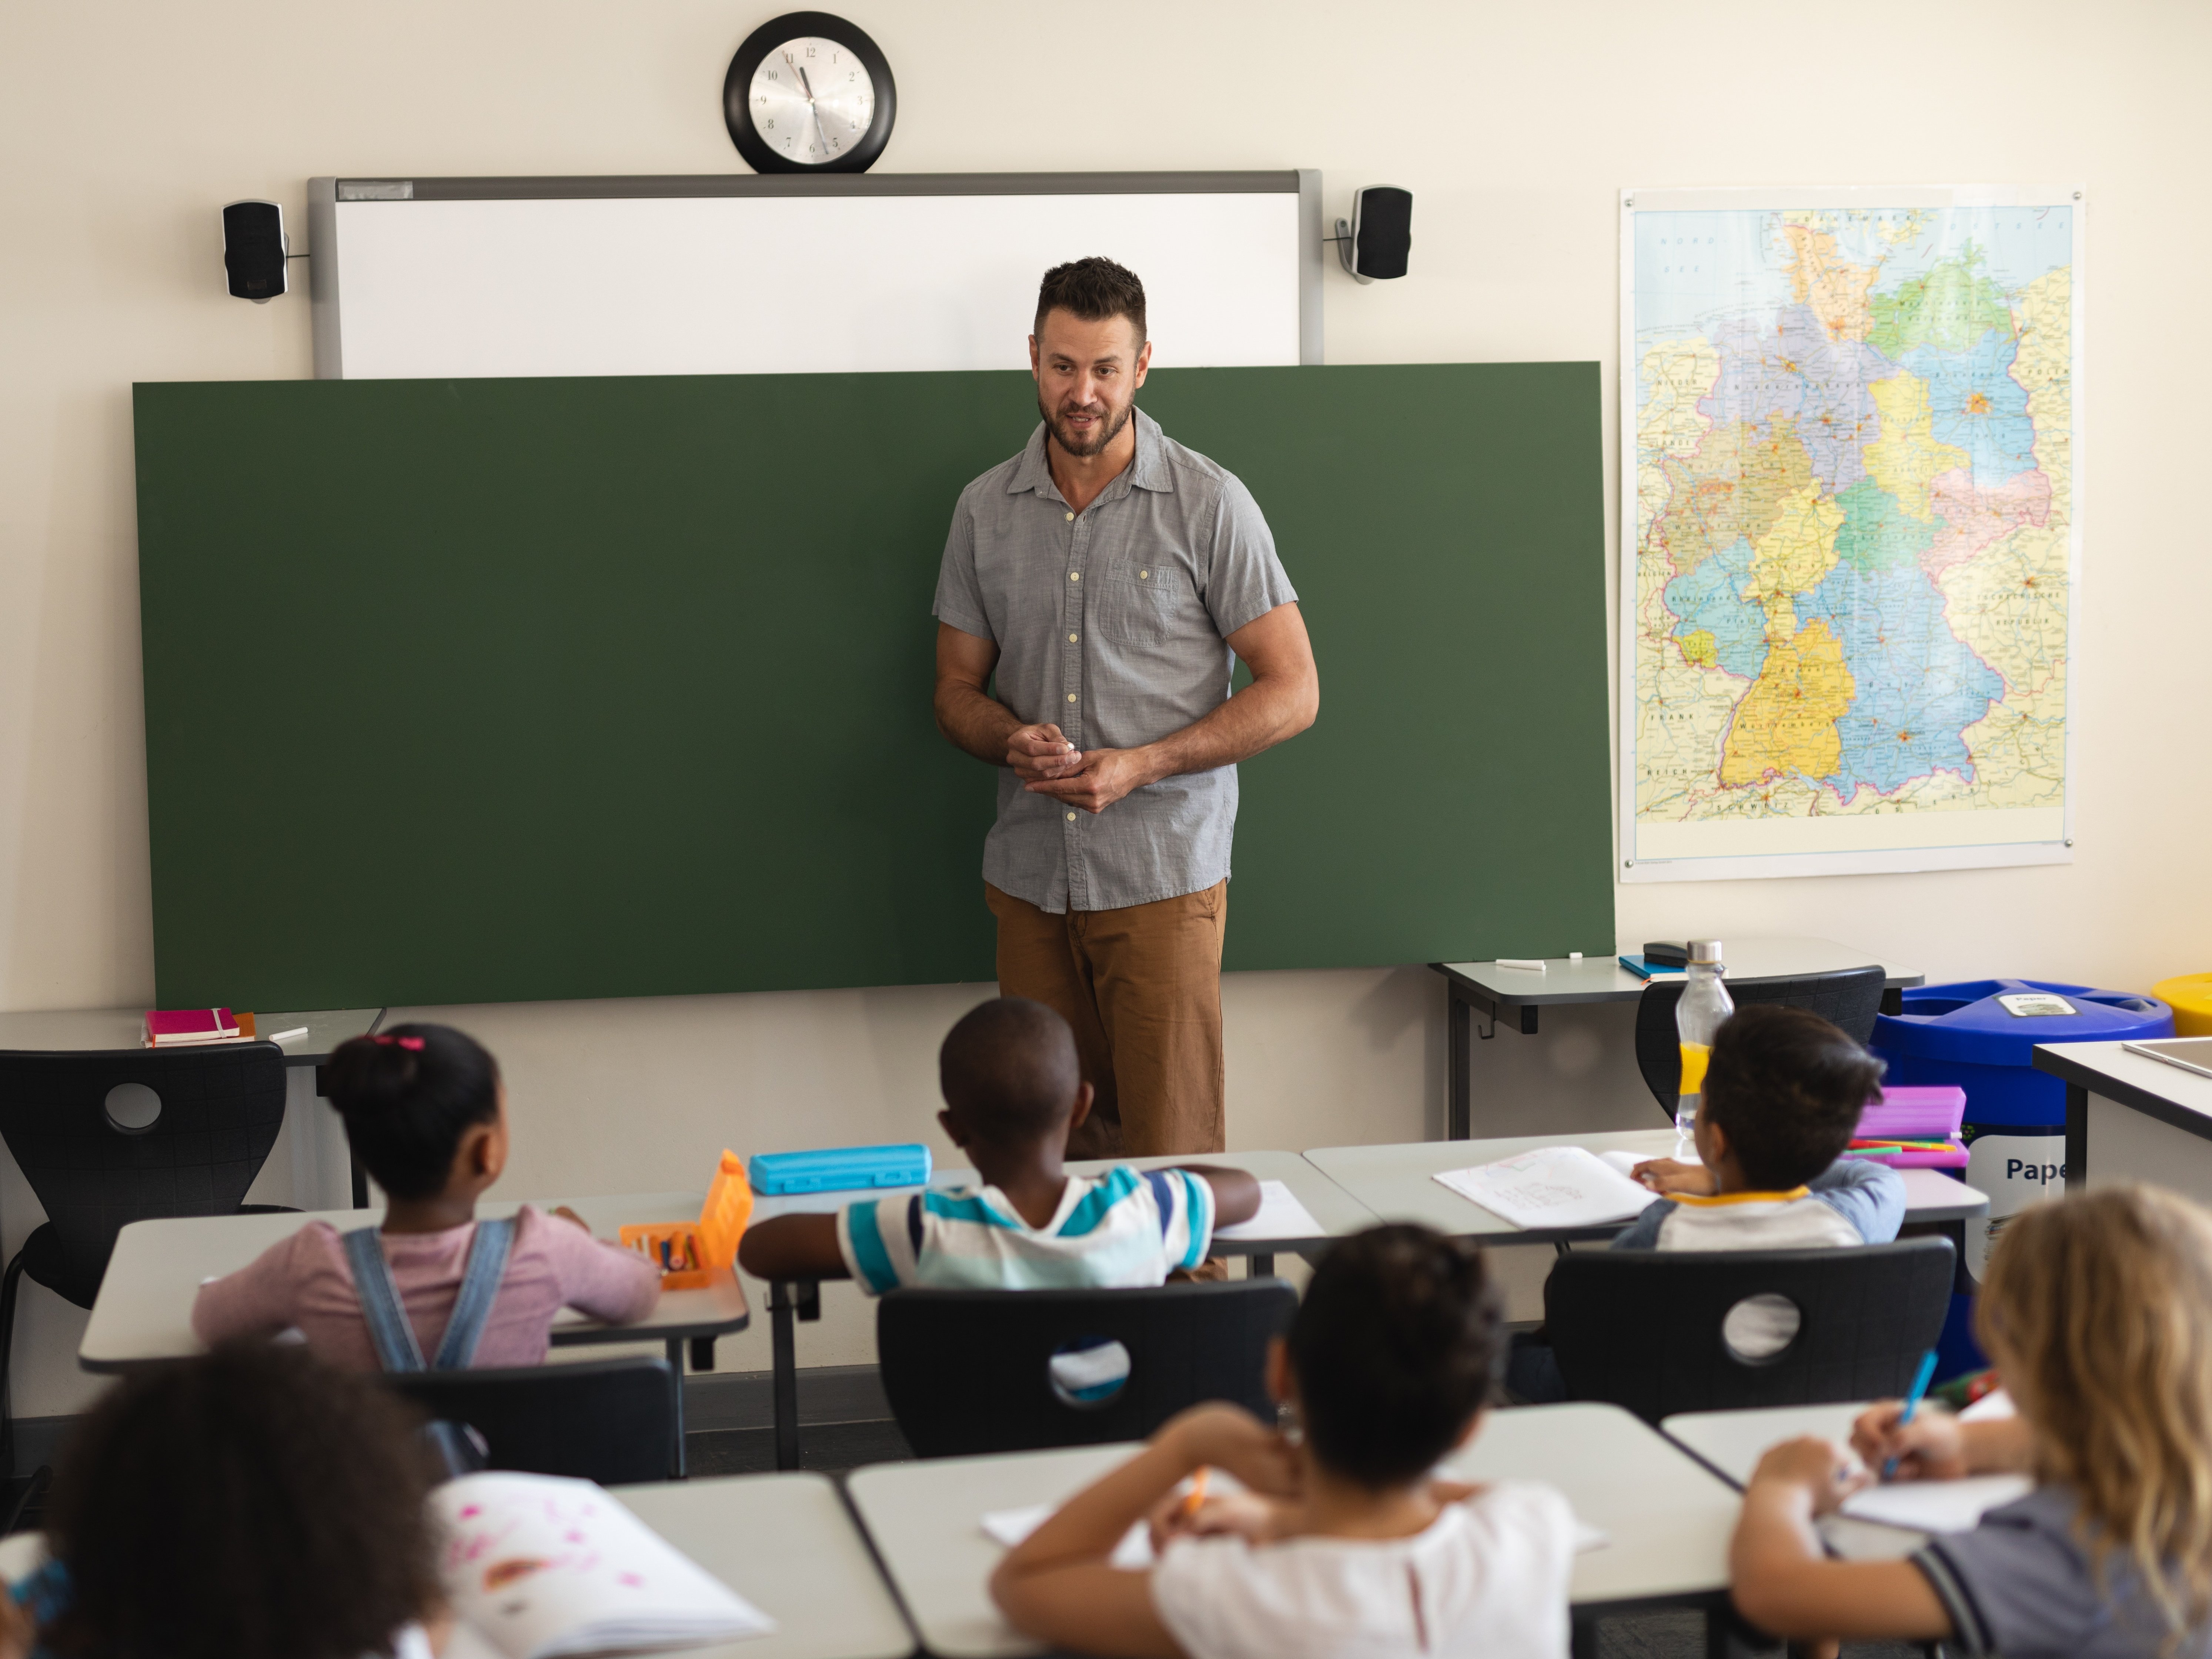 Lehrer steht vor leerer Tafel und spricht mit Grundschulkindern